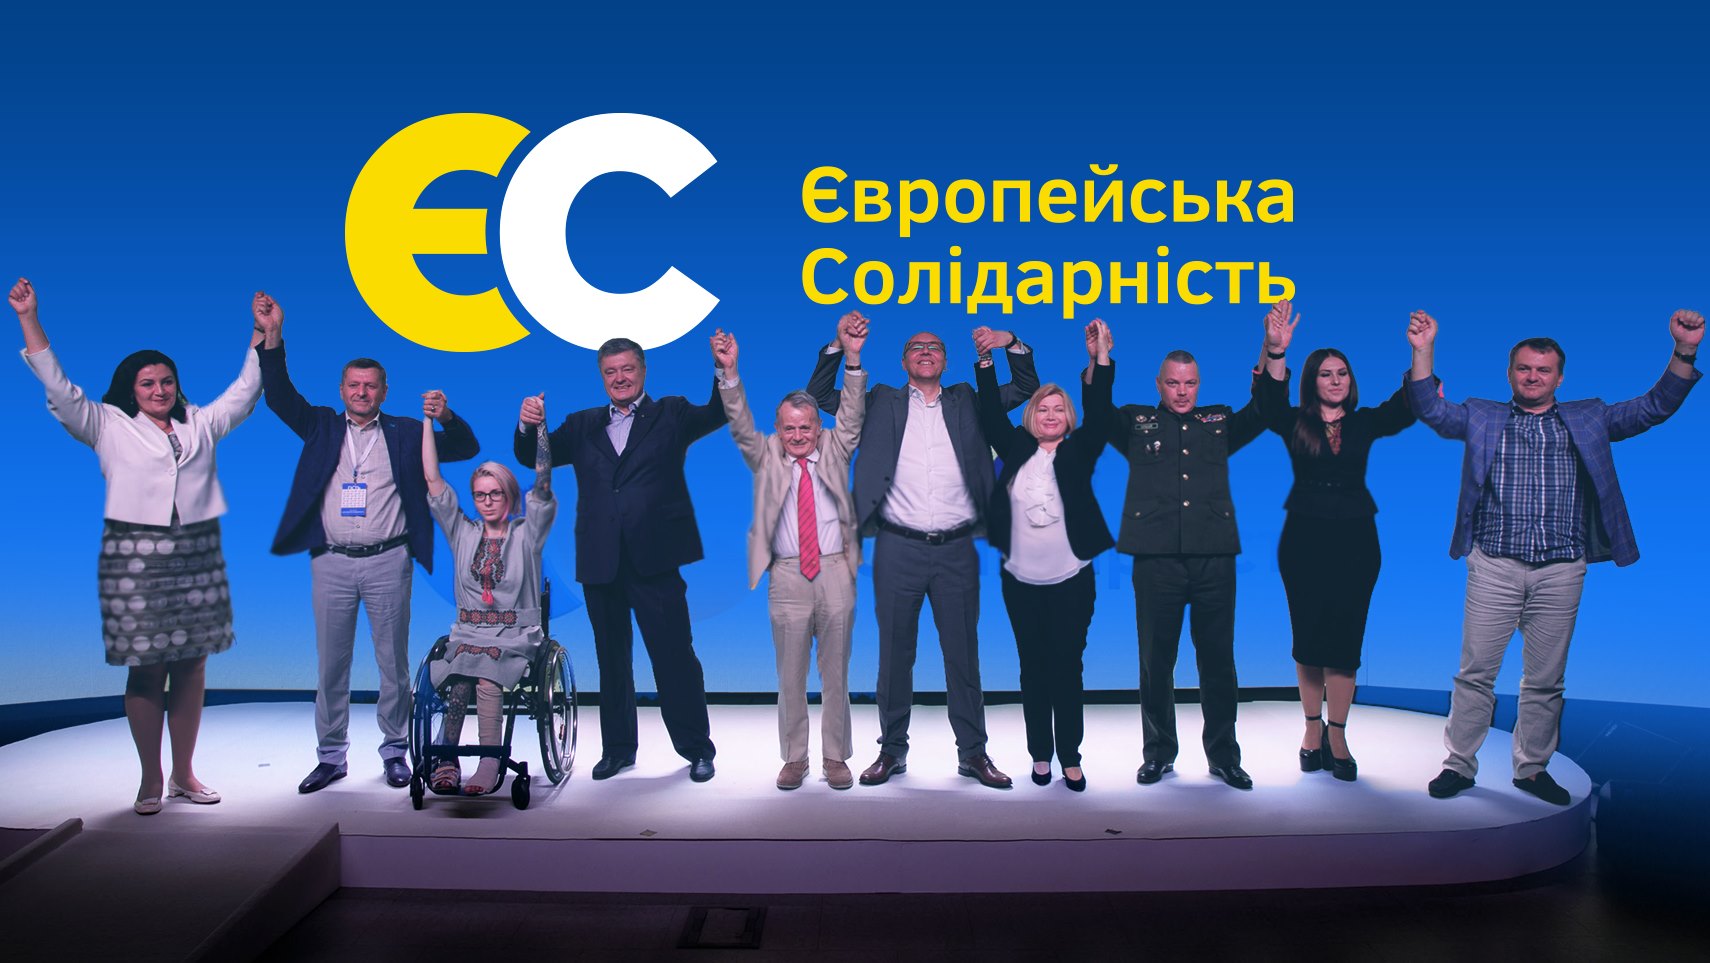 СМИ выяснили, кто поможет Порошенко провести в Верховную Раду партию "ЕС": названы имена